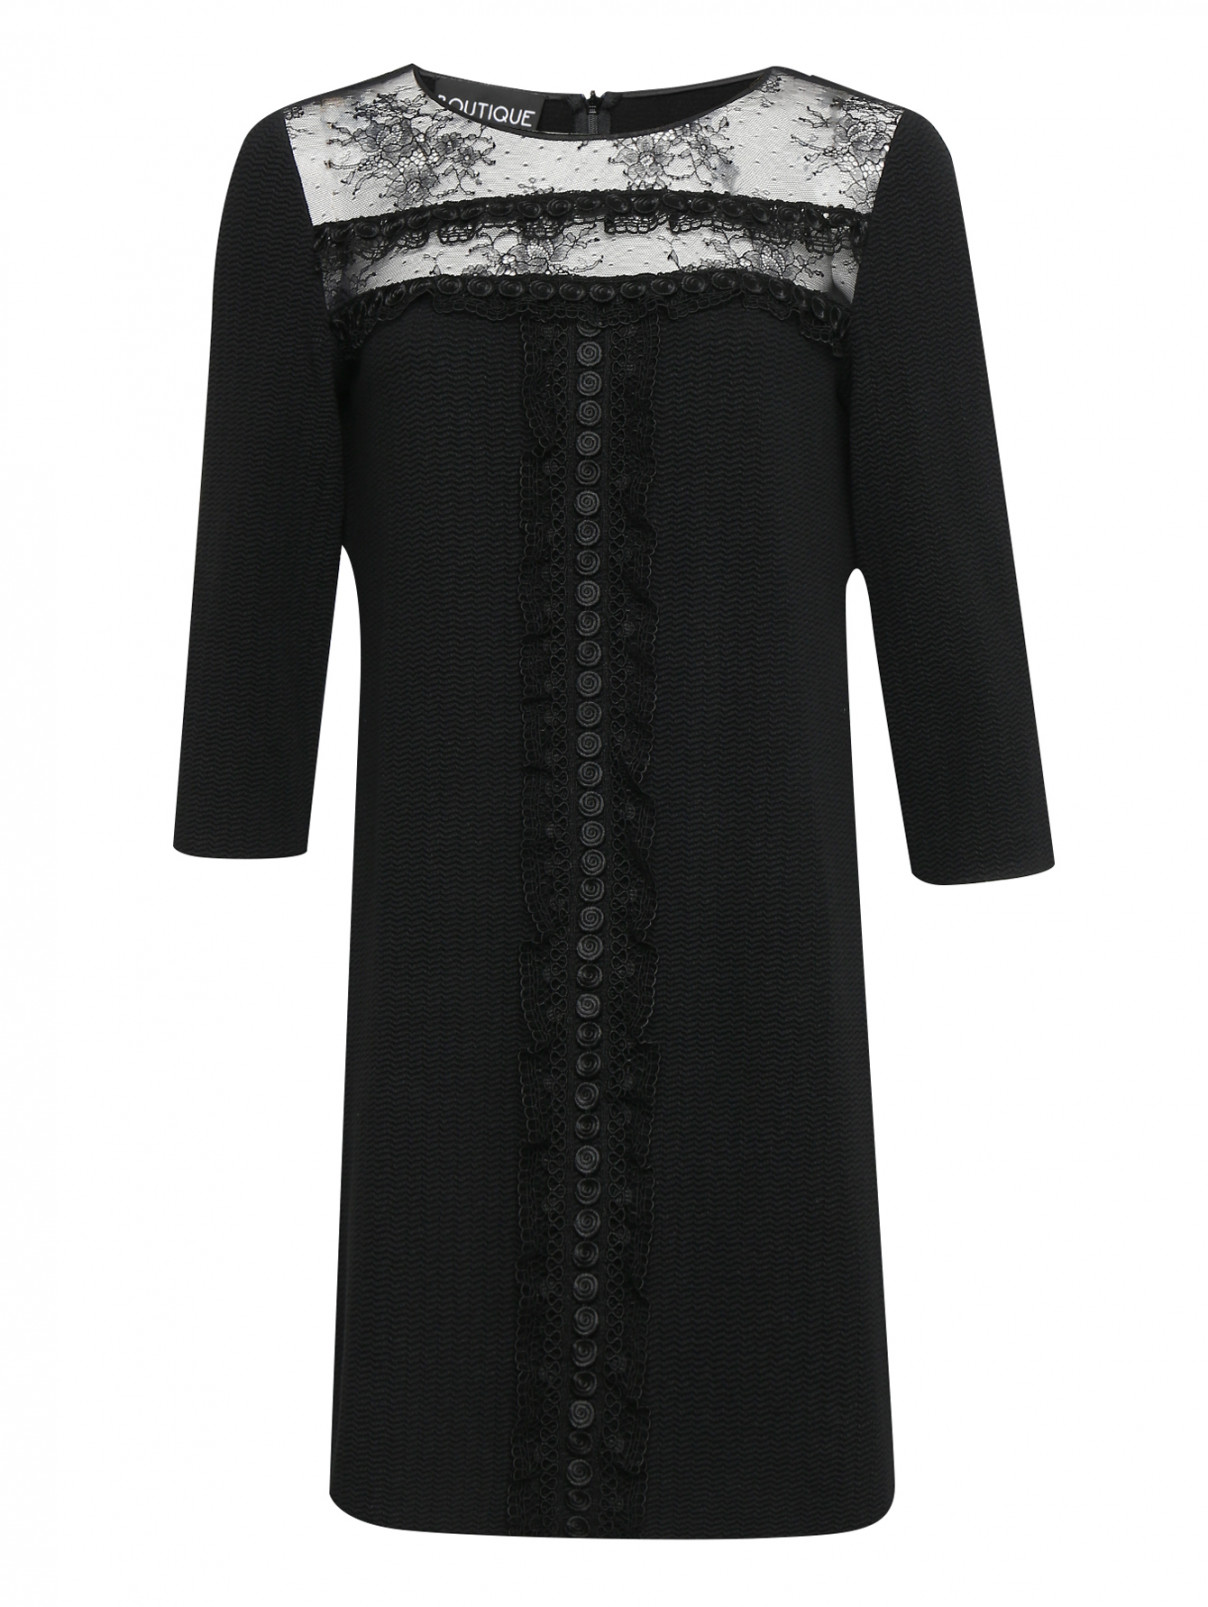 Трикотажное платье с декоративной отделкой BOUTIQUE MOSCHINO  –  Общий вид  – Цвет:  Черный